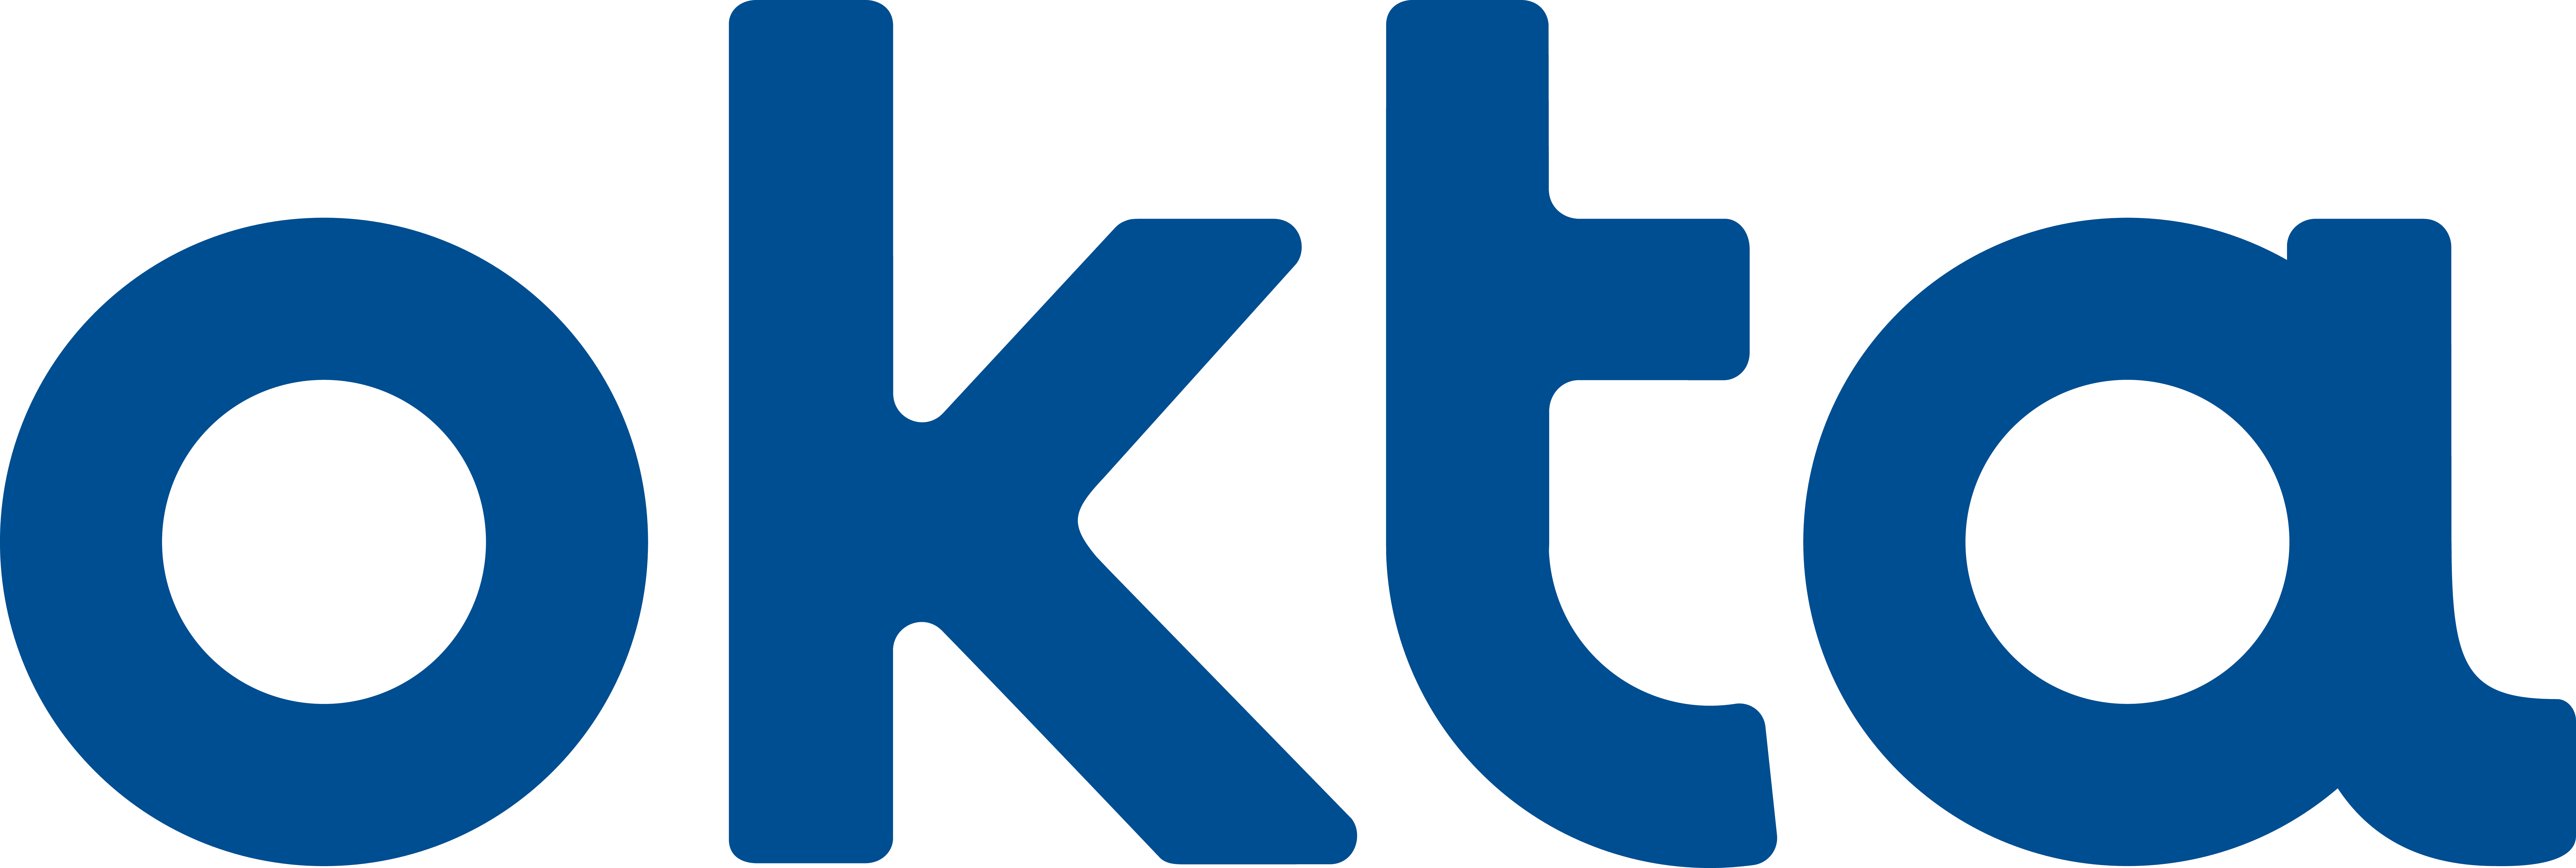 Okta Premier Support Bundle with Slack